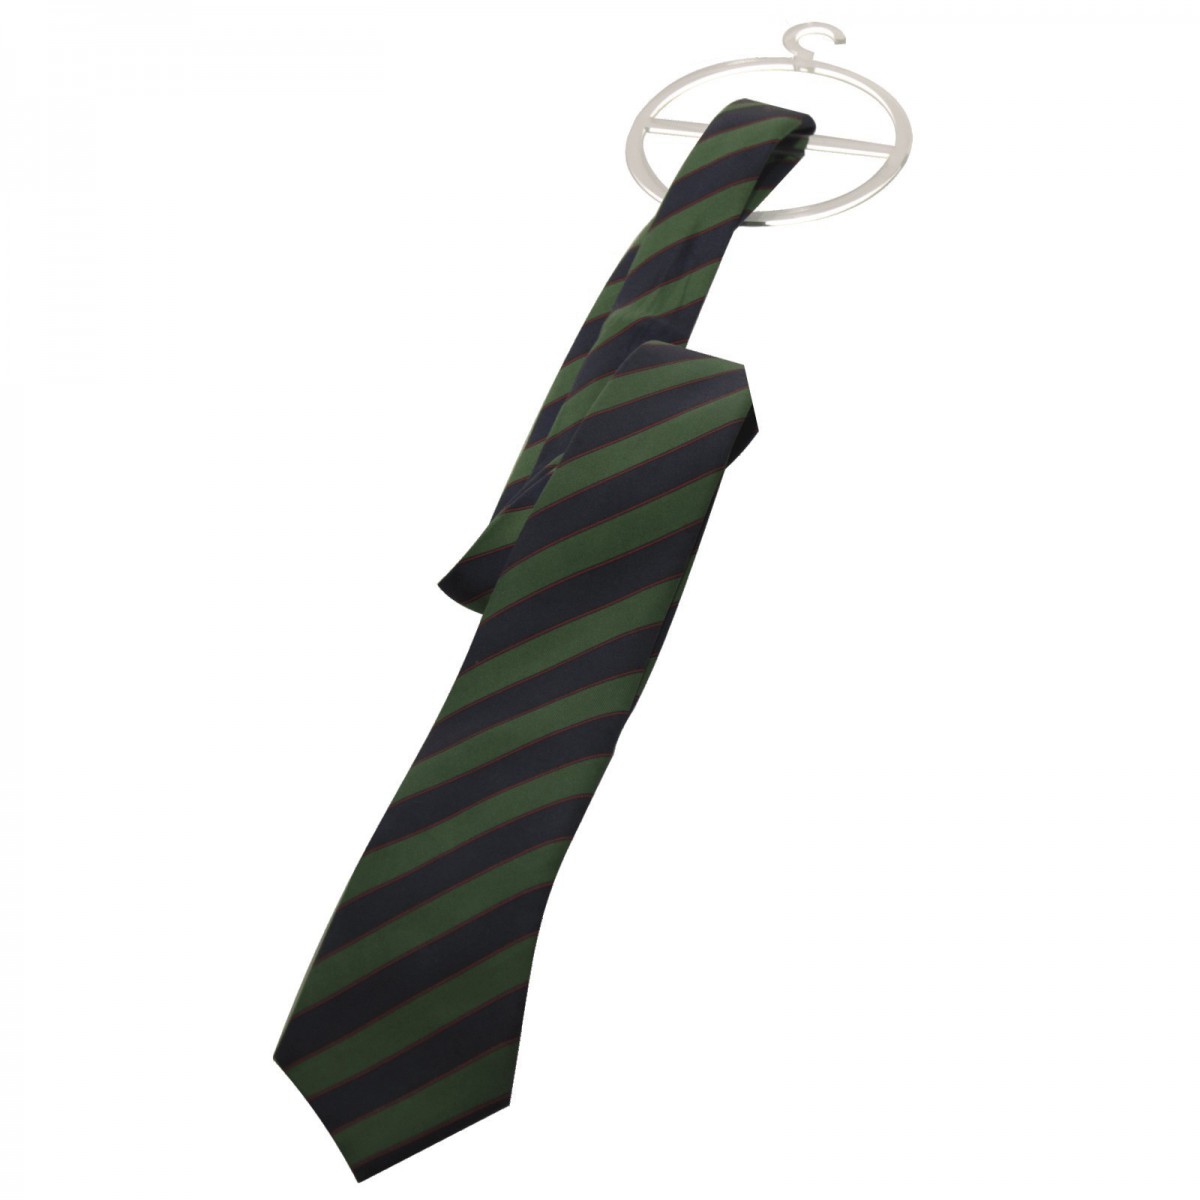 E-303 EPC-D - Porta cravatte e foulard in plexiglass trasparente - Misure 8 x H10 cm